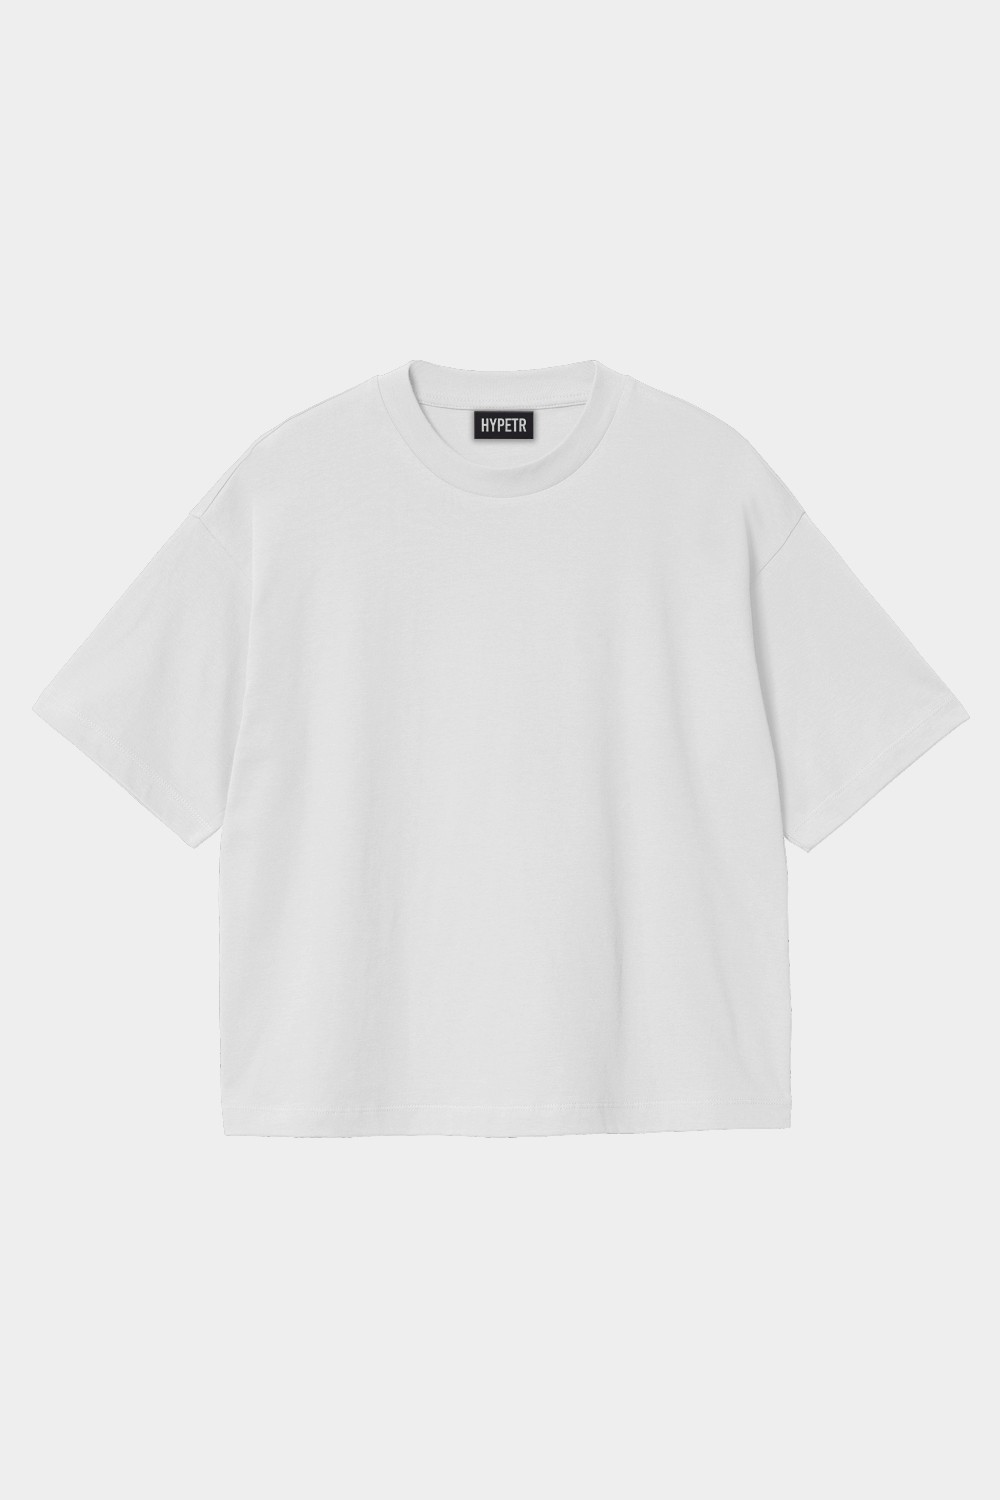 Oversized Basic T Shirt (HYPE-9)